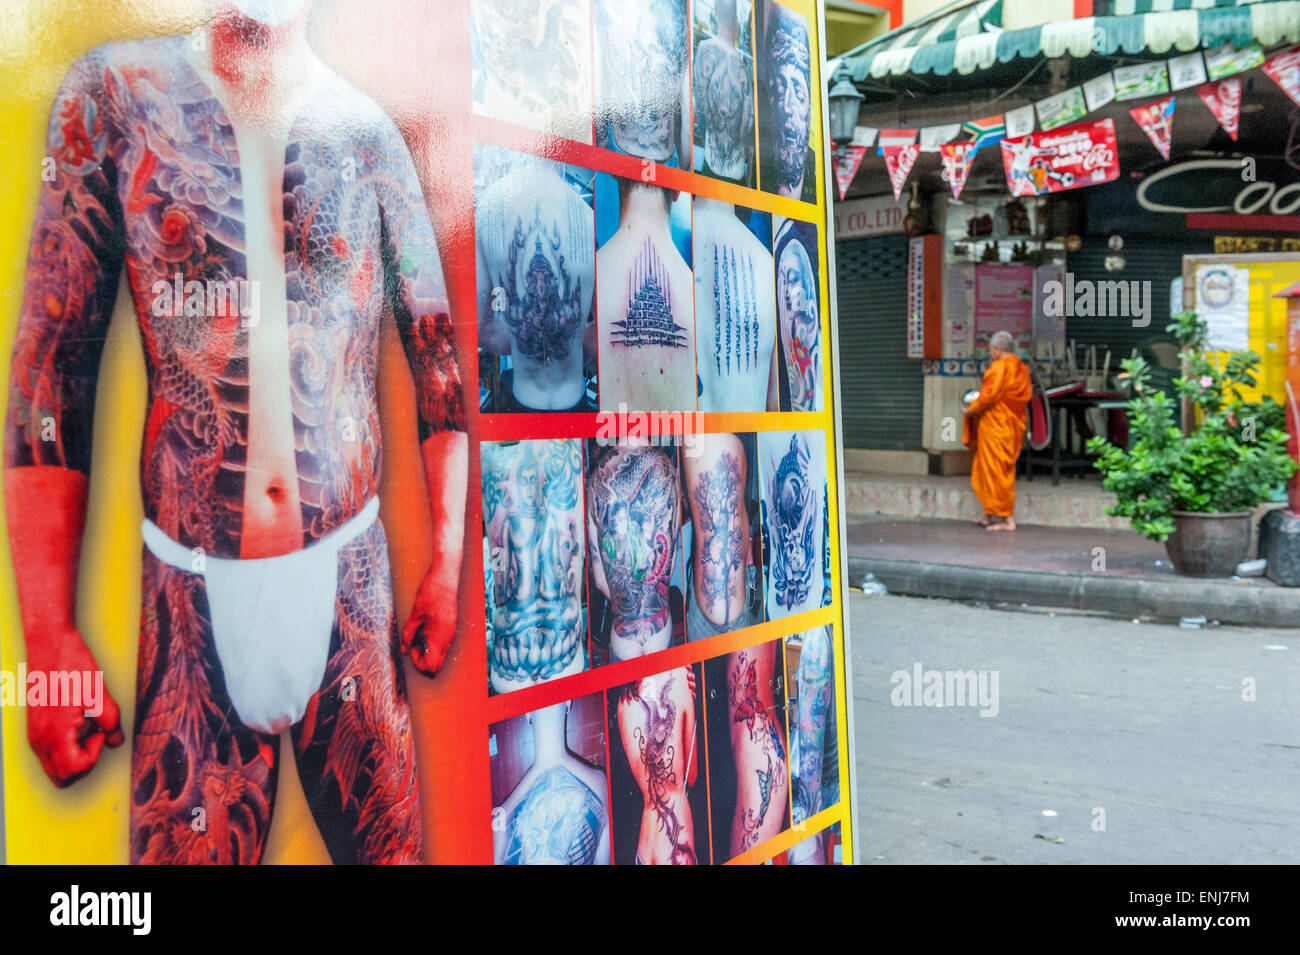 Buddhistischer Mönch auf seiner Morgen Almosen runden ein großes Display für ein Tattoo-Studio vorbei. Bangkok. Thailand Stockfoto